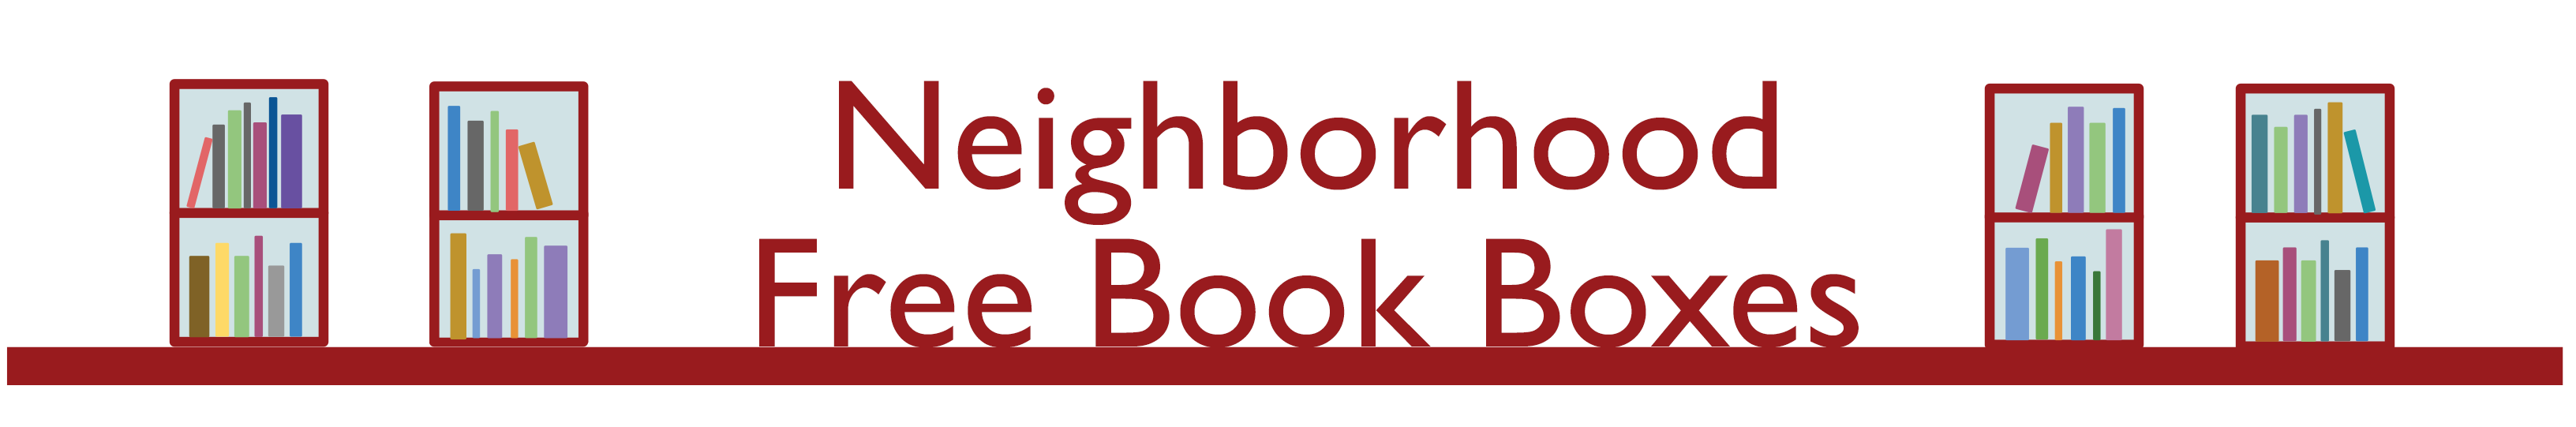 neighborhood free book boxes